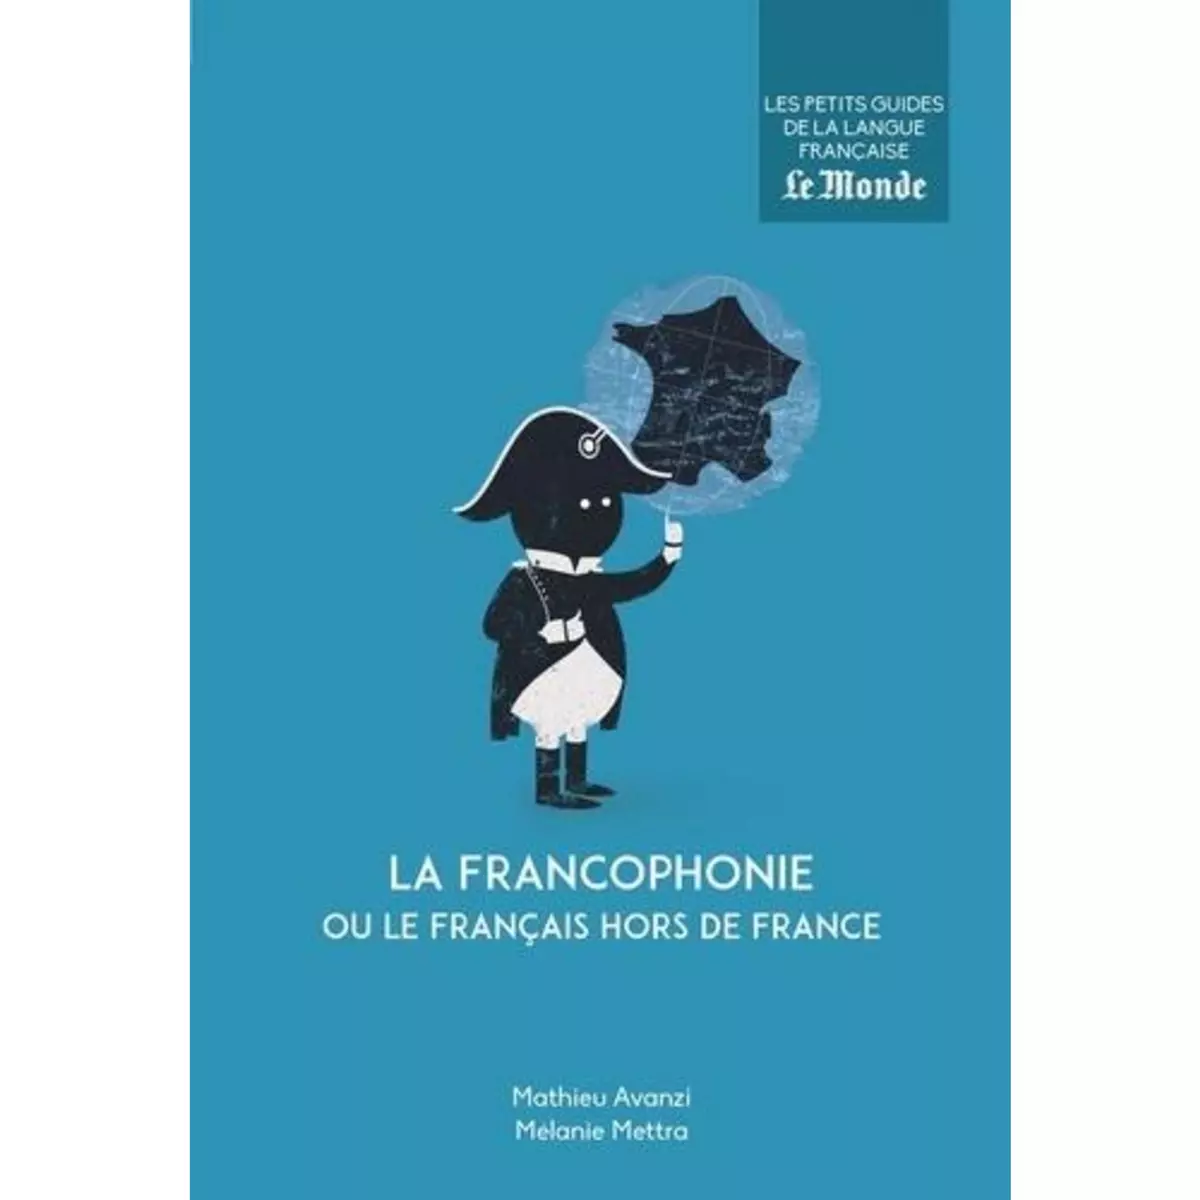  LA FRANCOPHONIE OU LE FRANCAIS HORS DE FRANCE, Avanzi Mathieu